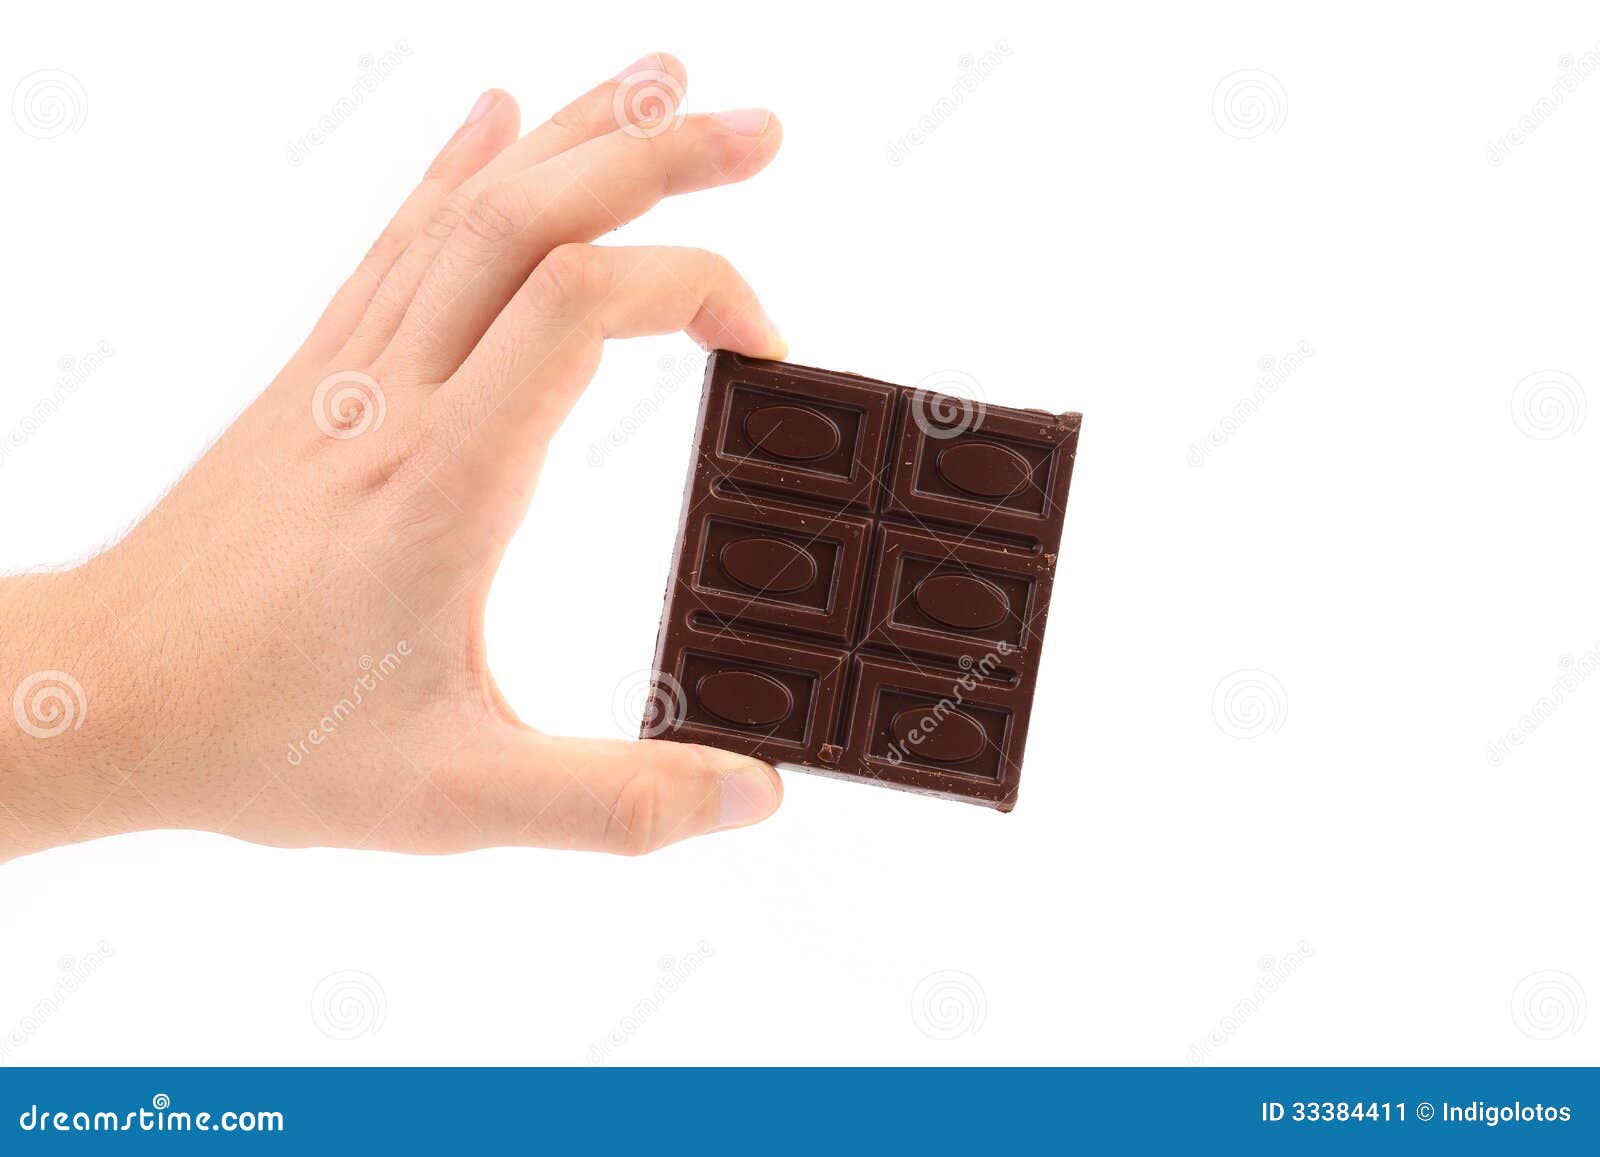 Держите в руках сладкое. Шоколадка в руке. Плитка шоколада в руке. Рука держит шоколад. Рука держит шоколадку.